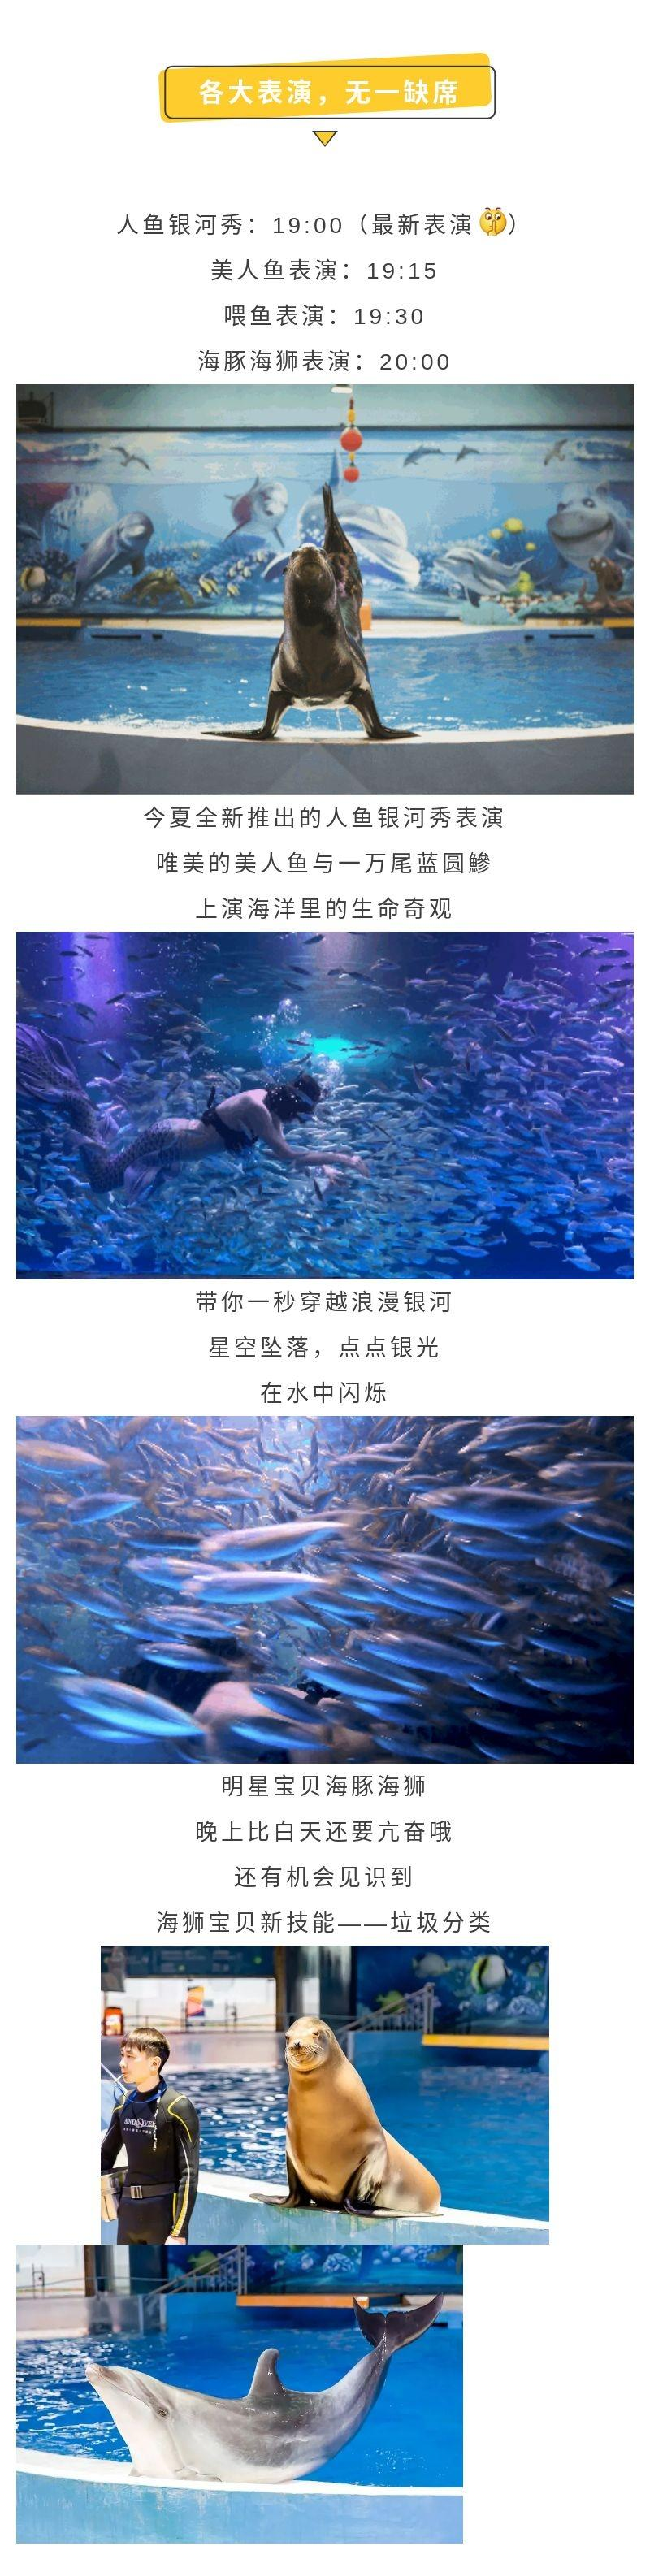 南京海底世界特惠晚场亲子一大一小预售票